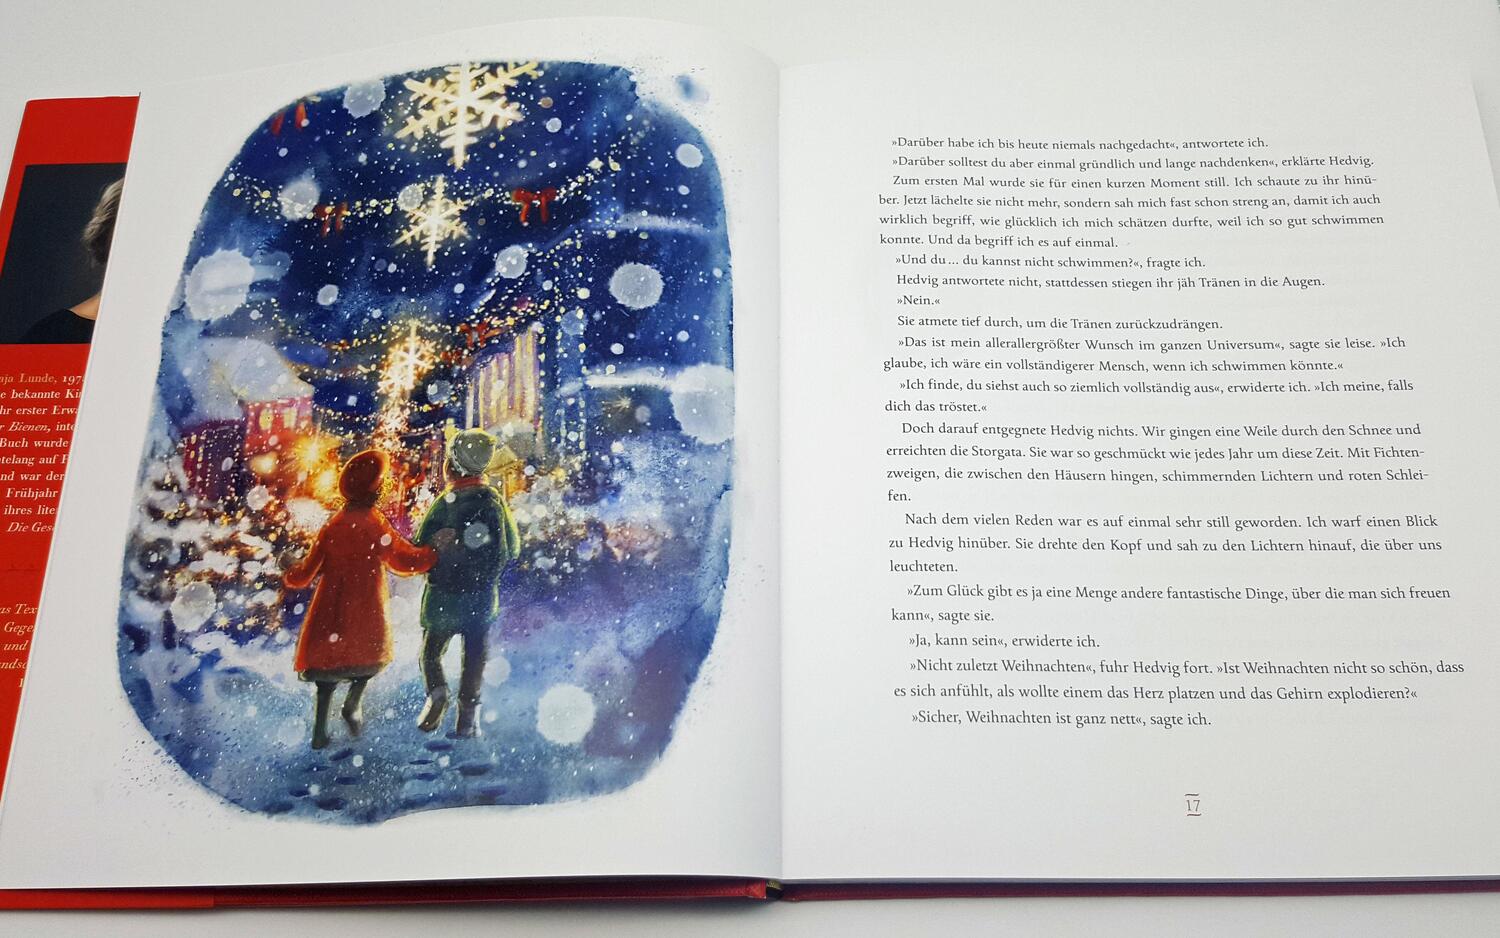 Bild: 9783442758272 | Die Schneeschwester | Eine Weihnachtsgeschichte | Maja Lunde | Buch